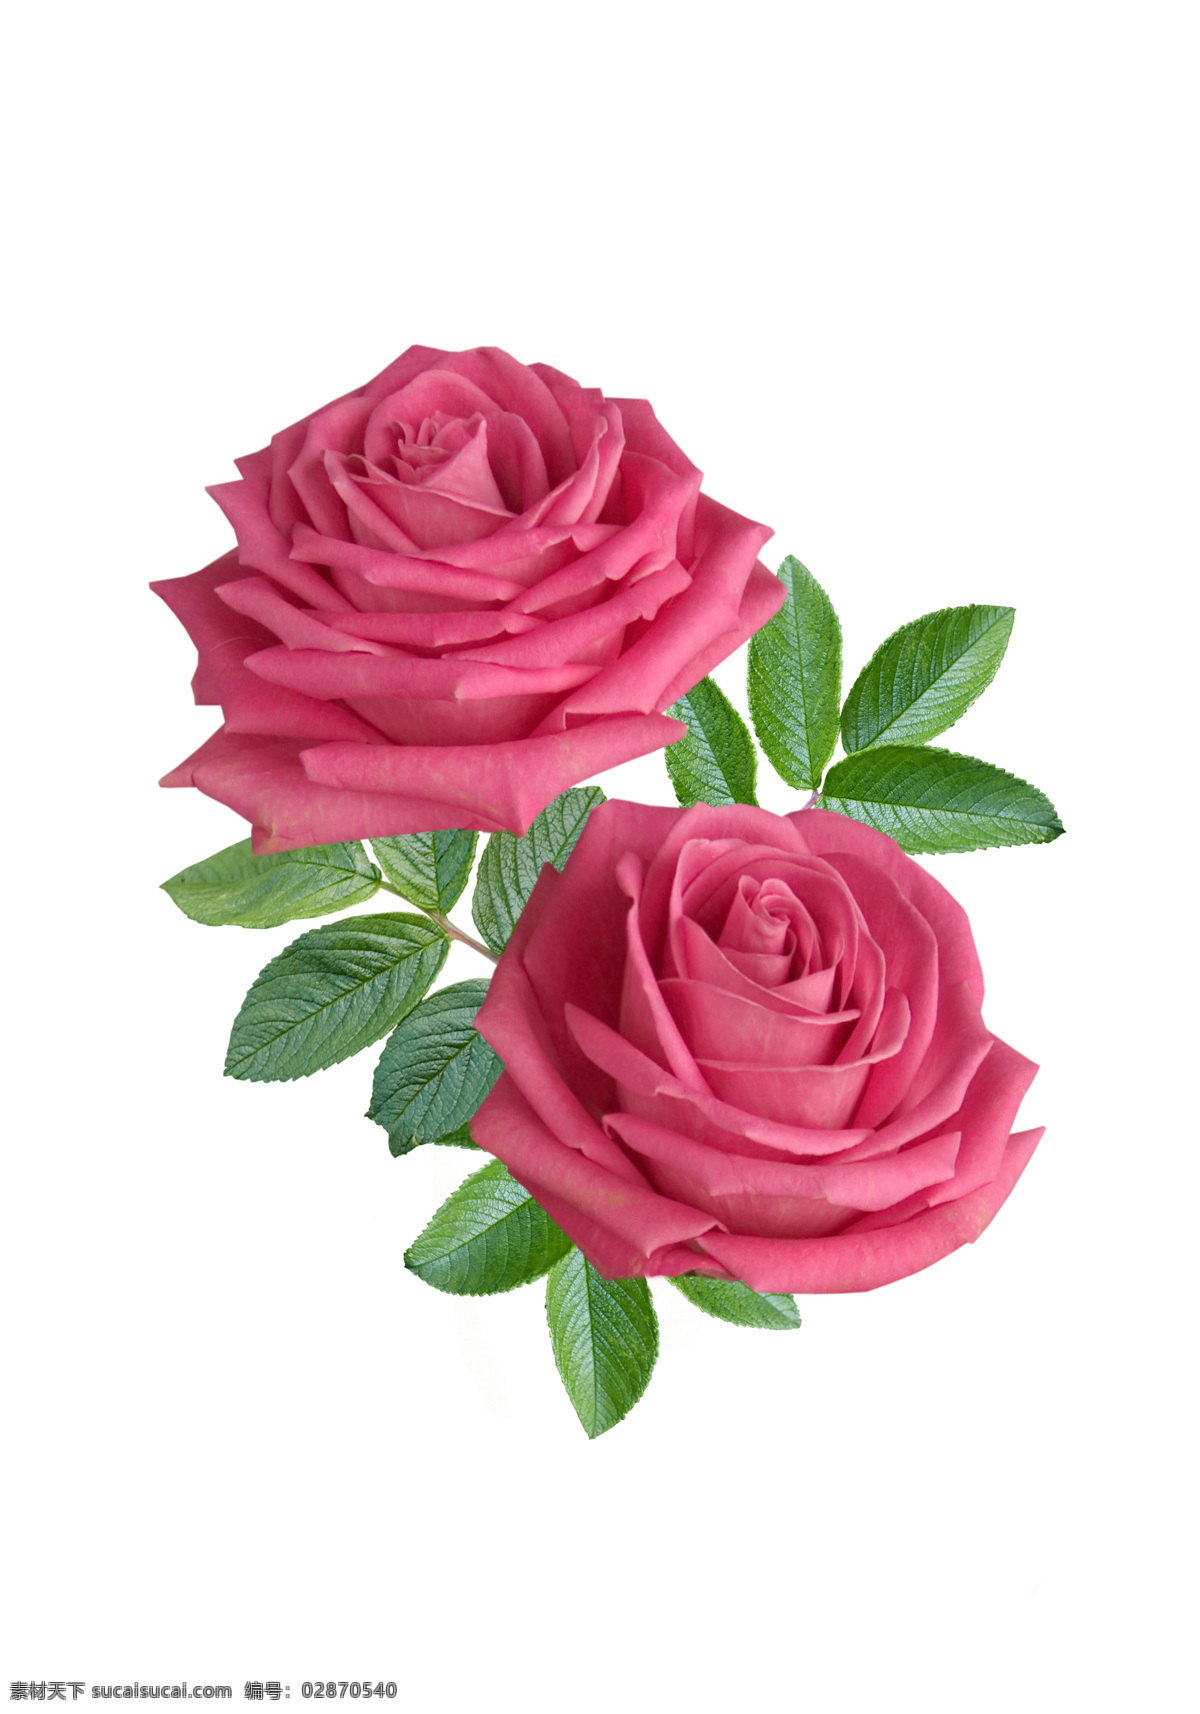 两 朵 玫瑰花 绿叶 红玫瑰 红色玫瑰花 高清 爱情 花朵 高清图片 两朵玫瑰 生长 花草树木 生物世界